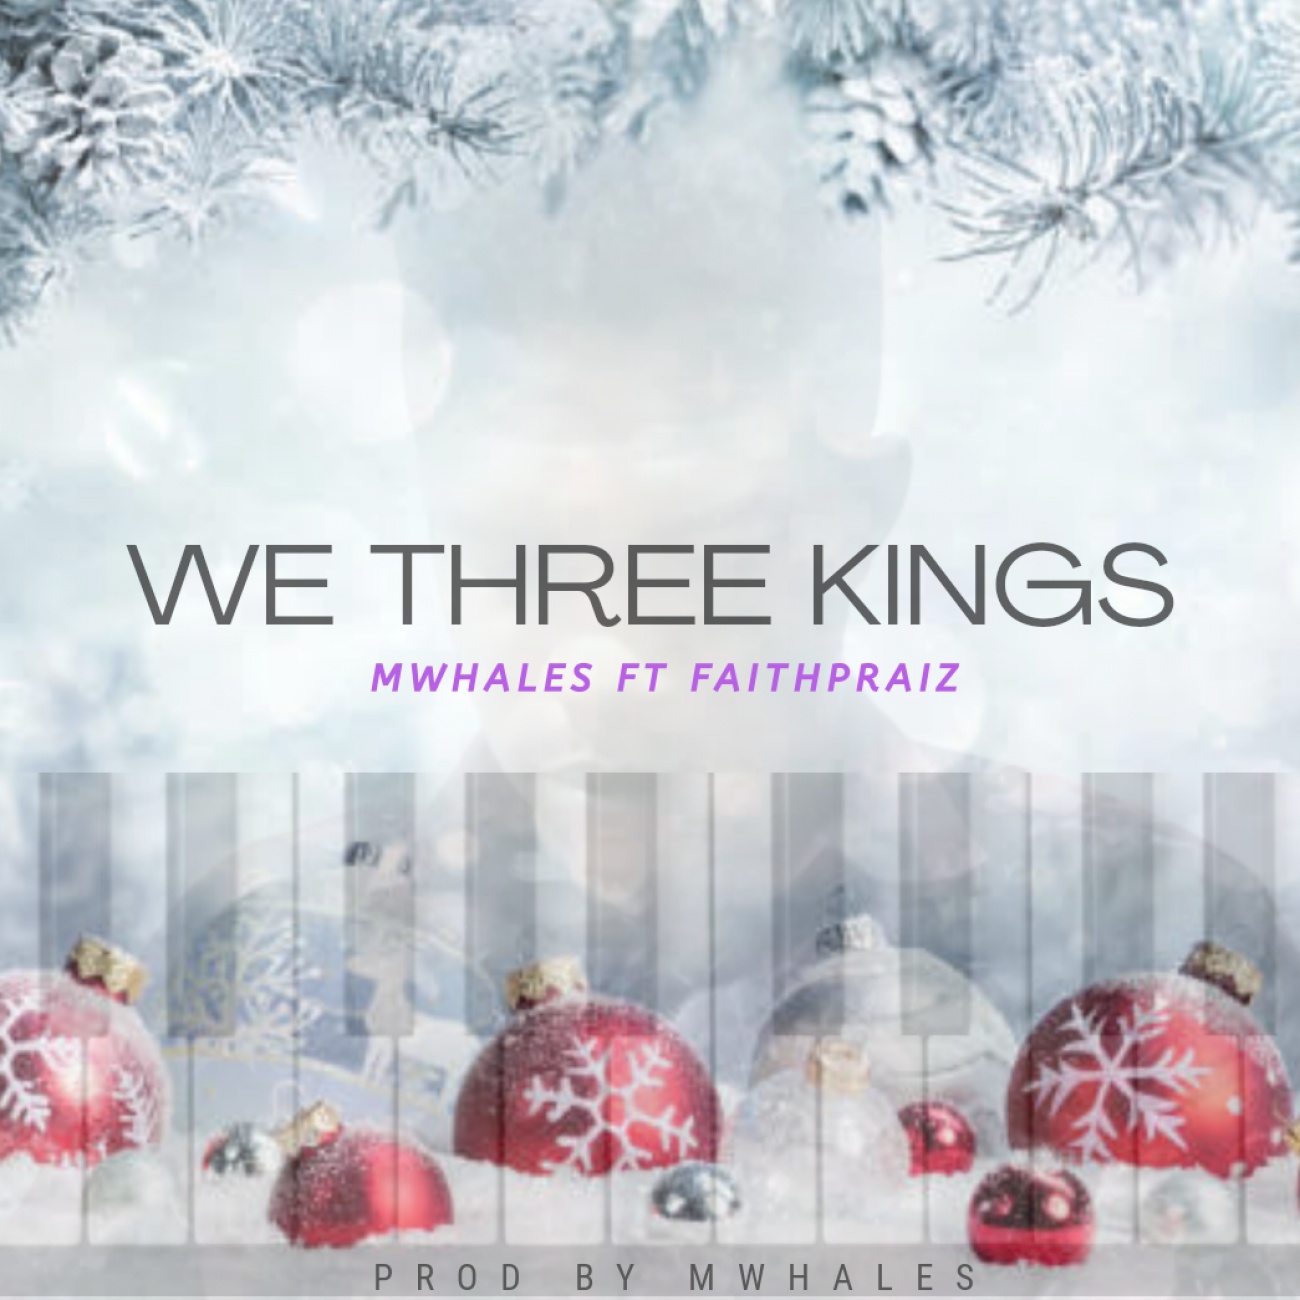 "WE THREE KINGS" Jazz piano piece